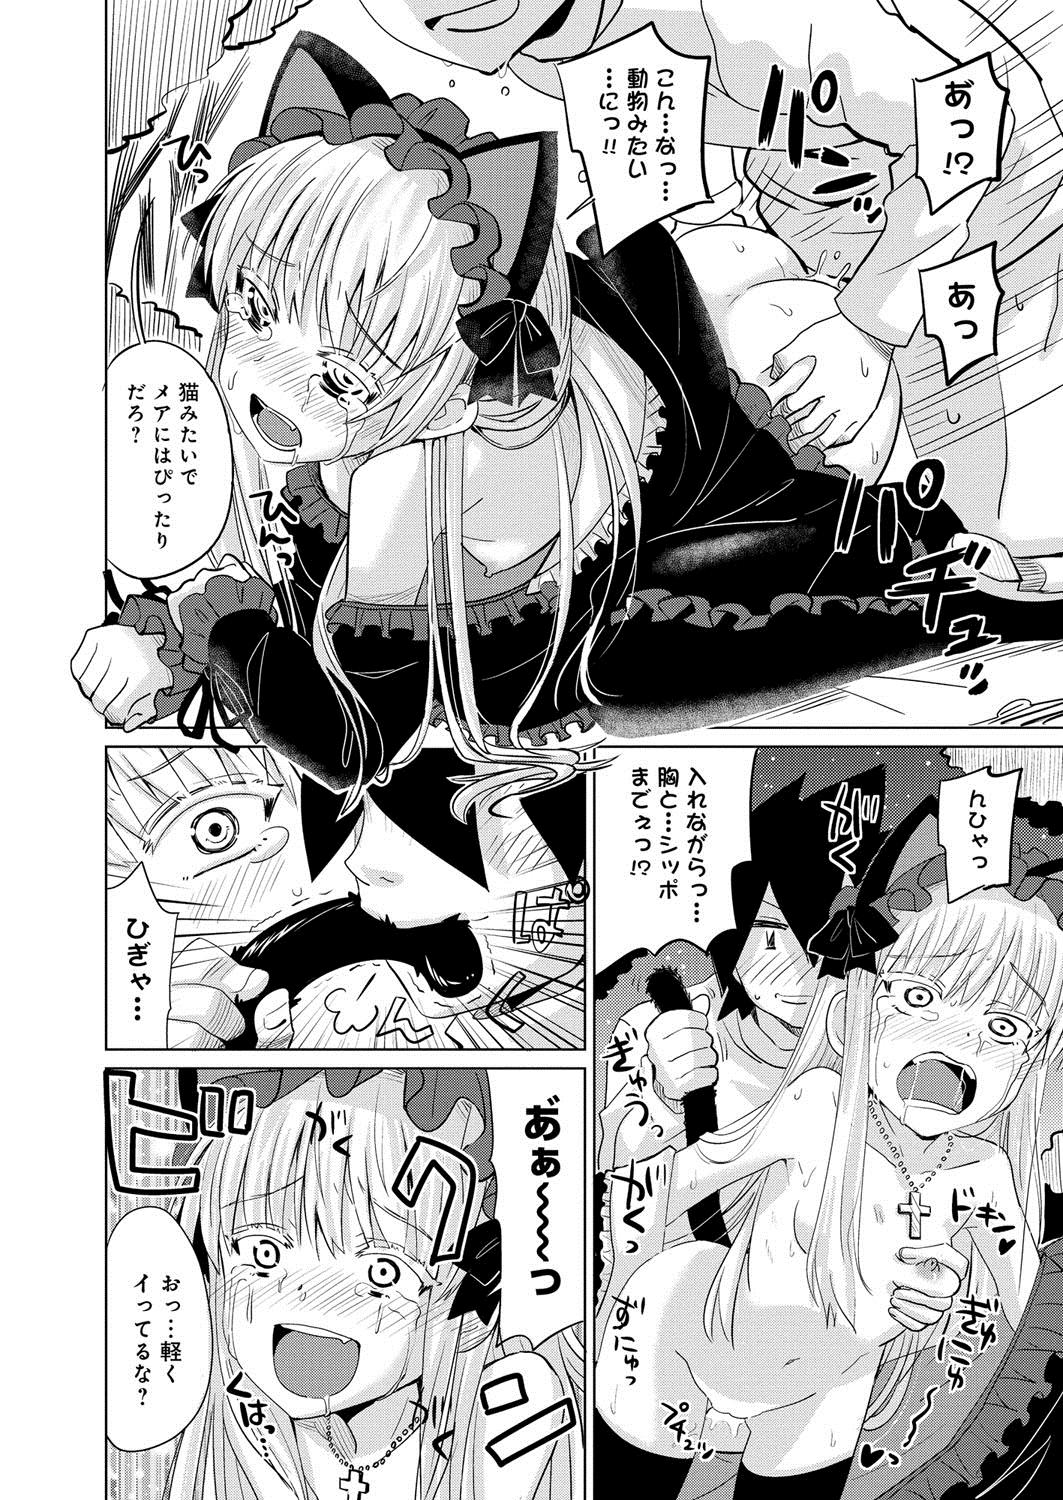 [Anthology] Lord of Valkyrie Adult - Comic Anthology R18 Handakara Saigomade... Mou, Kishi-sama no Ecchi♪ 80